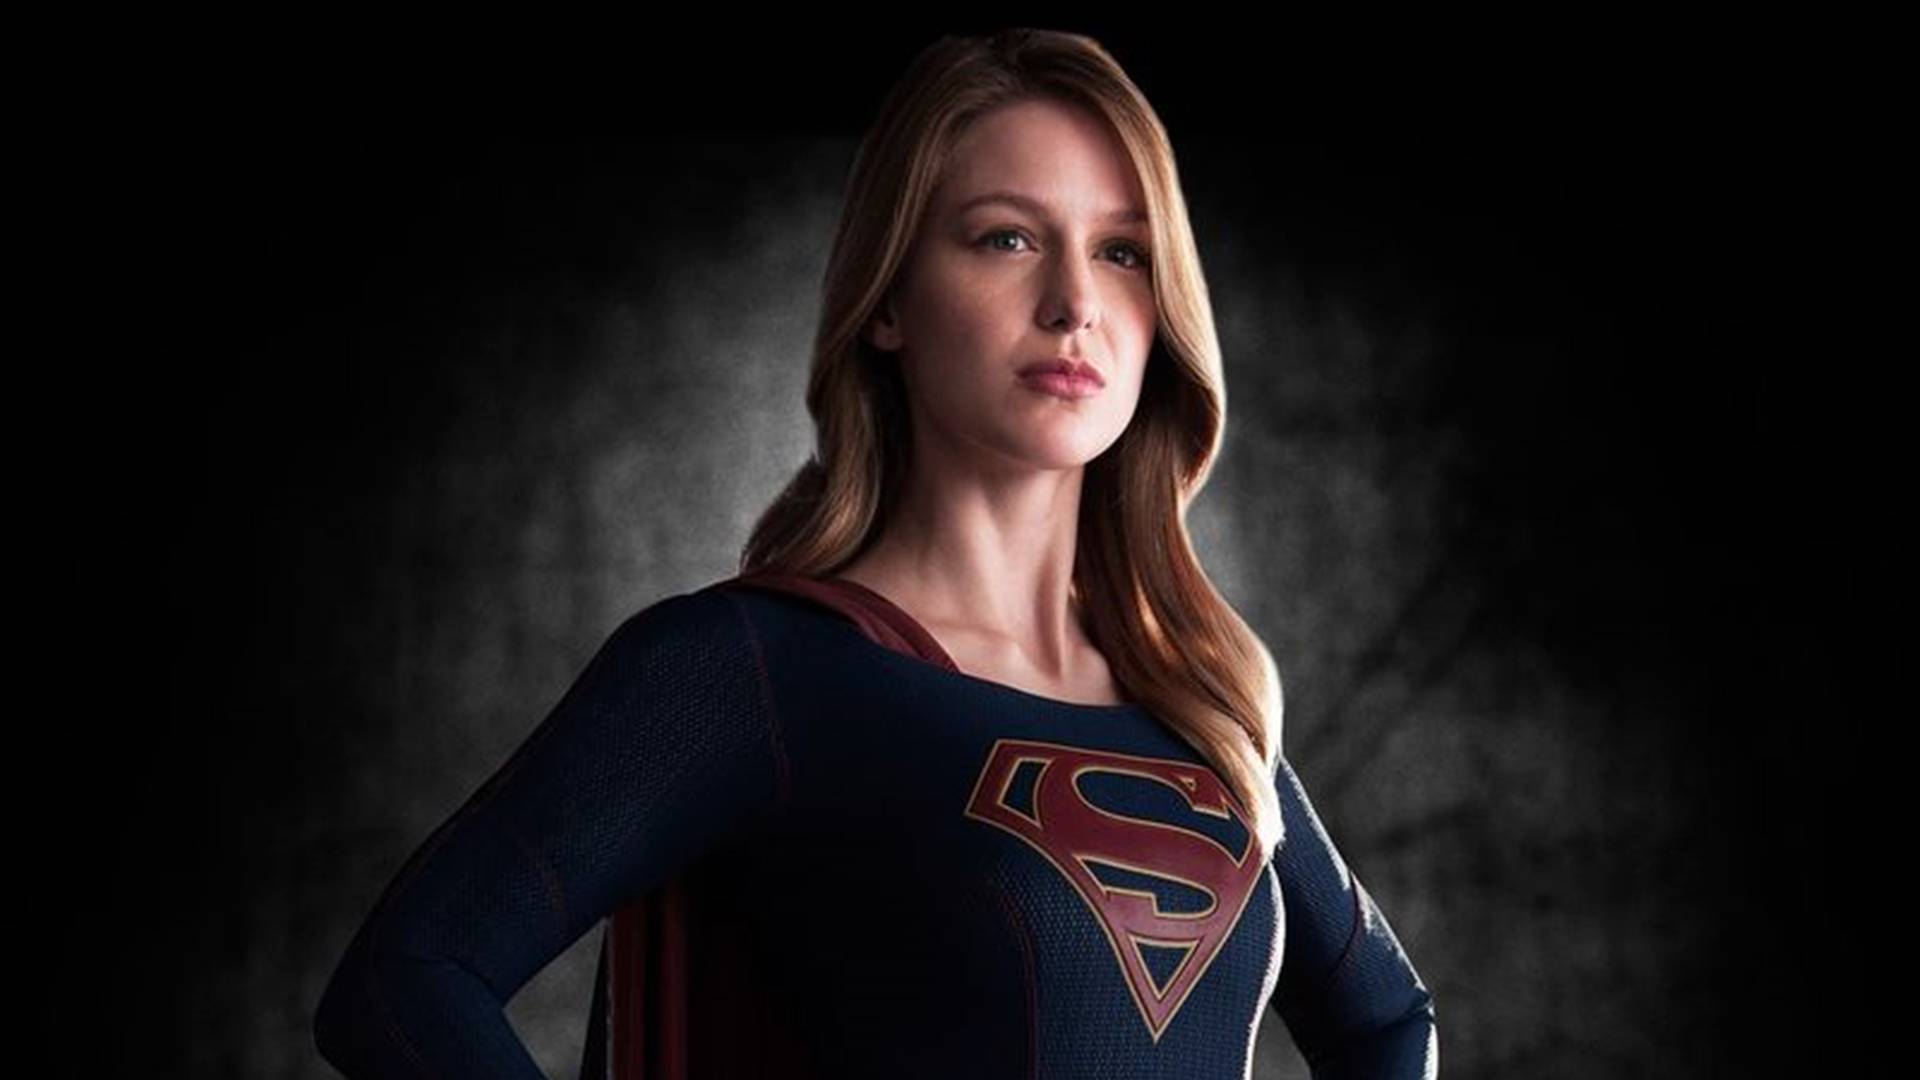 Saiu o primeiro trailer oficial de Supergirl, nova série da DC Comics